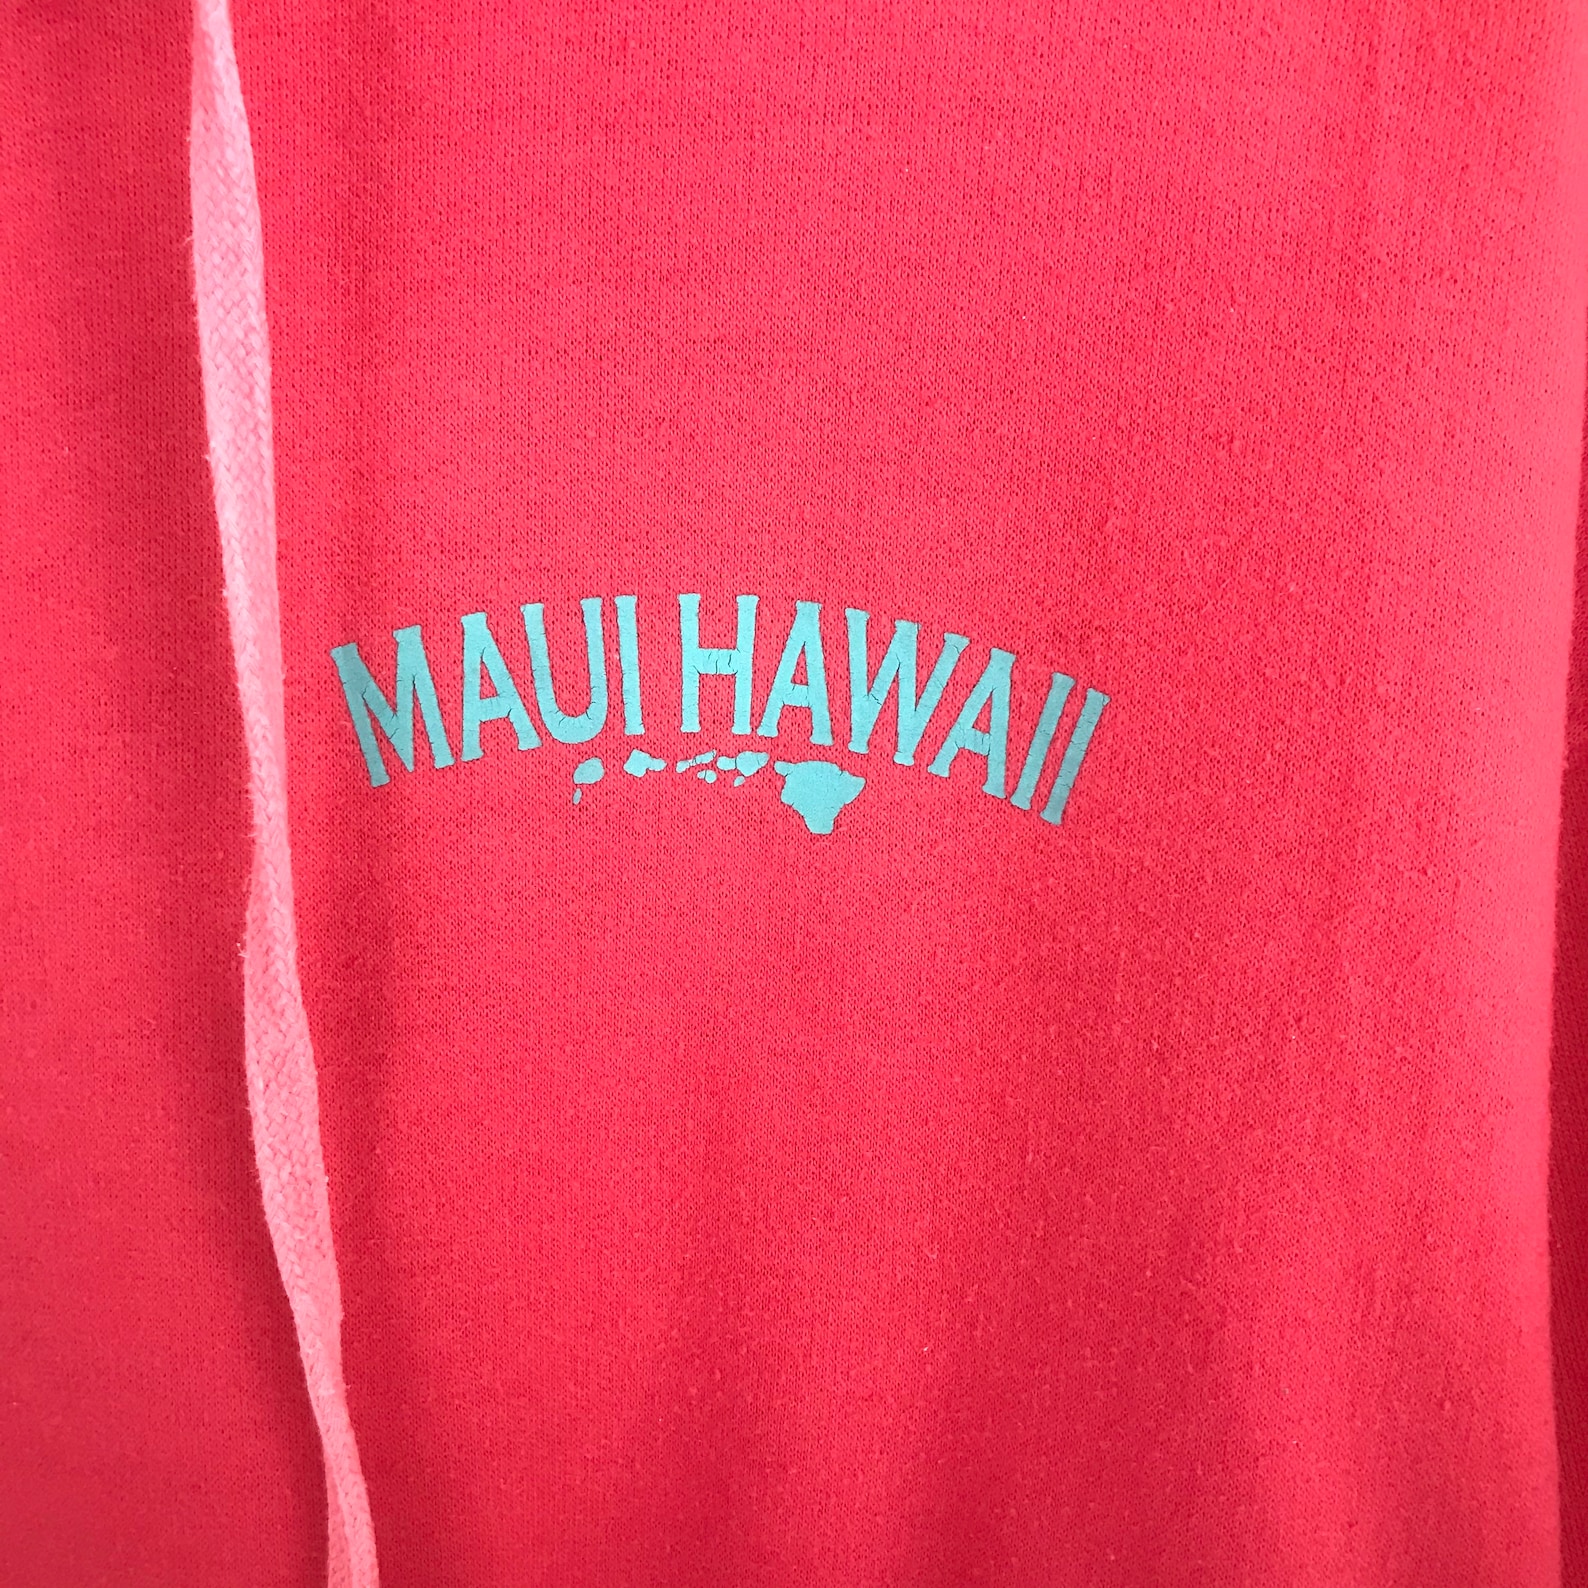 Vintage Aloha Maui Hawaii Hoodie Large Size Pink Colour | Etsy